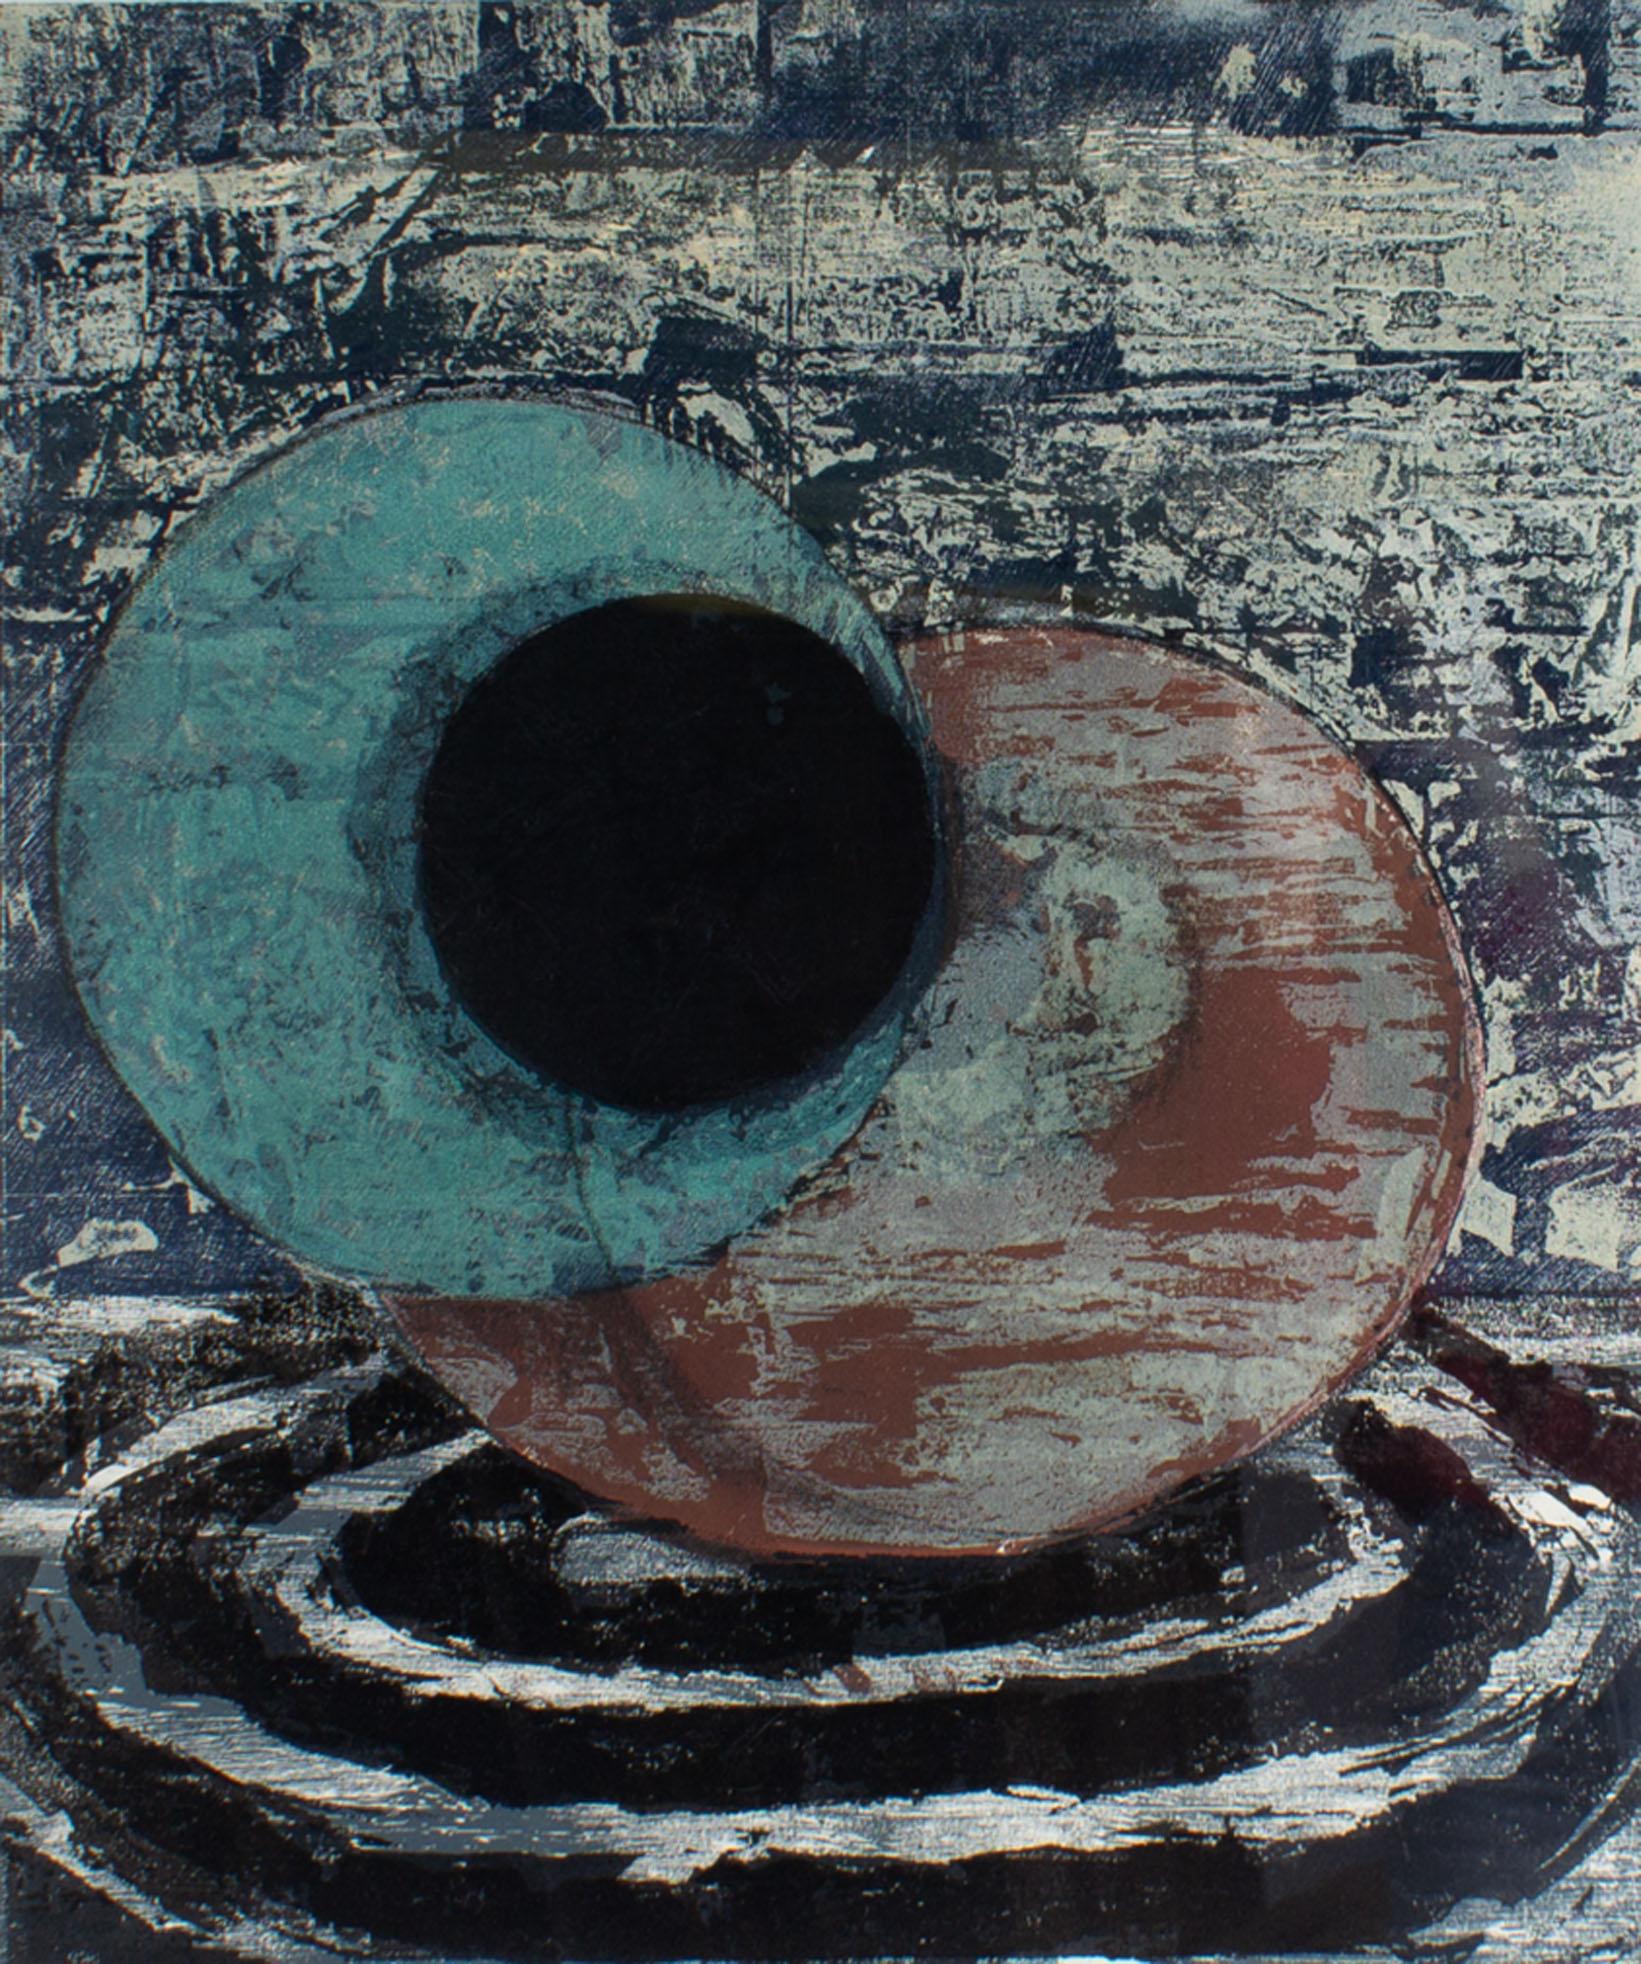 Lithographie abstraite de 1985 intitulée Echo Park de l'artiste américain Michael David (né en 1954). L'œuvre présente deux formes circulaires au centre de la composition dans des tons bleus, noirs et rouges. La moitié inférieure de l'œuvre présente